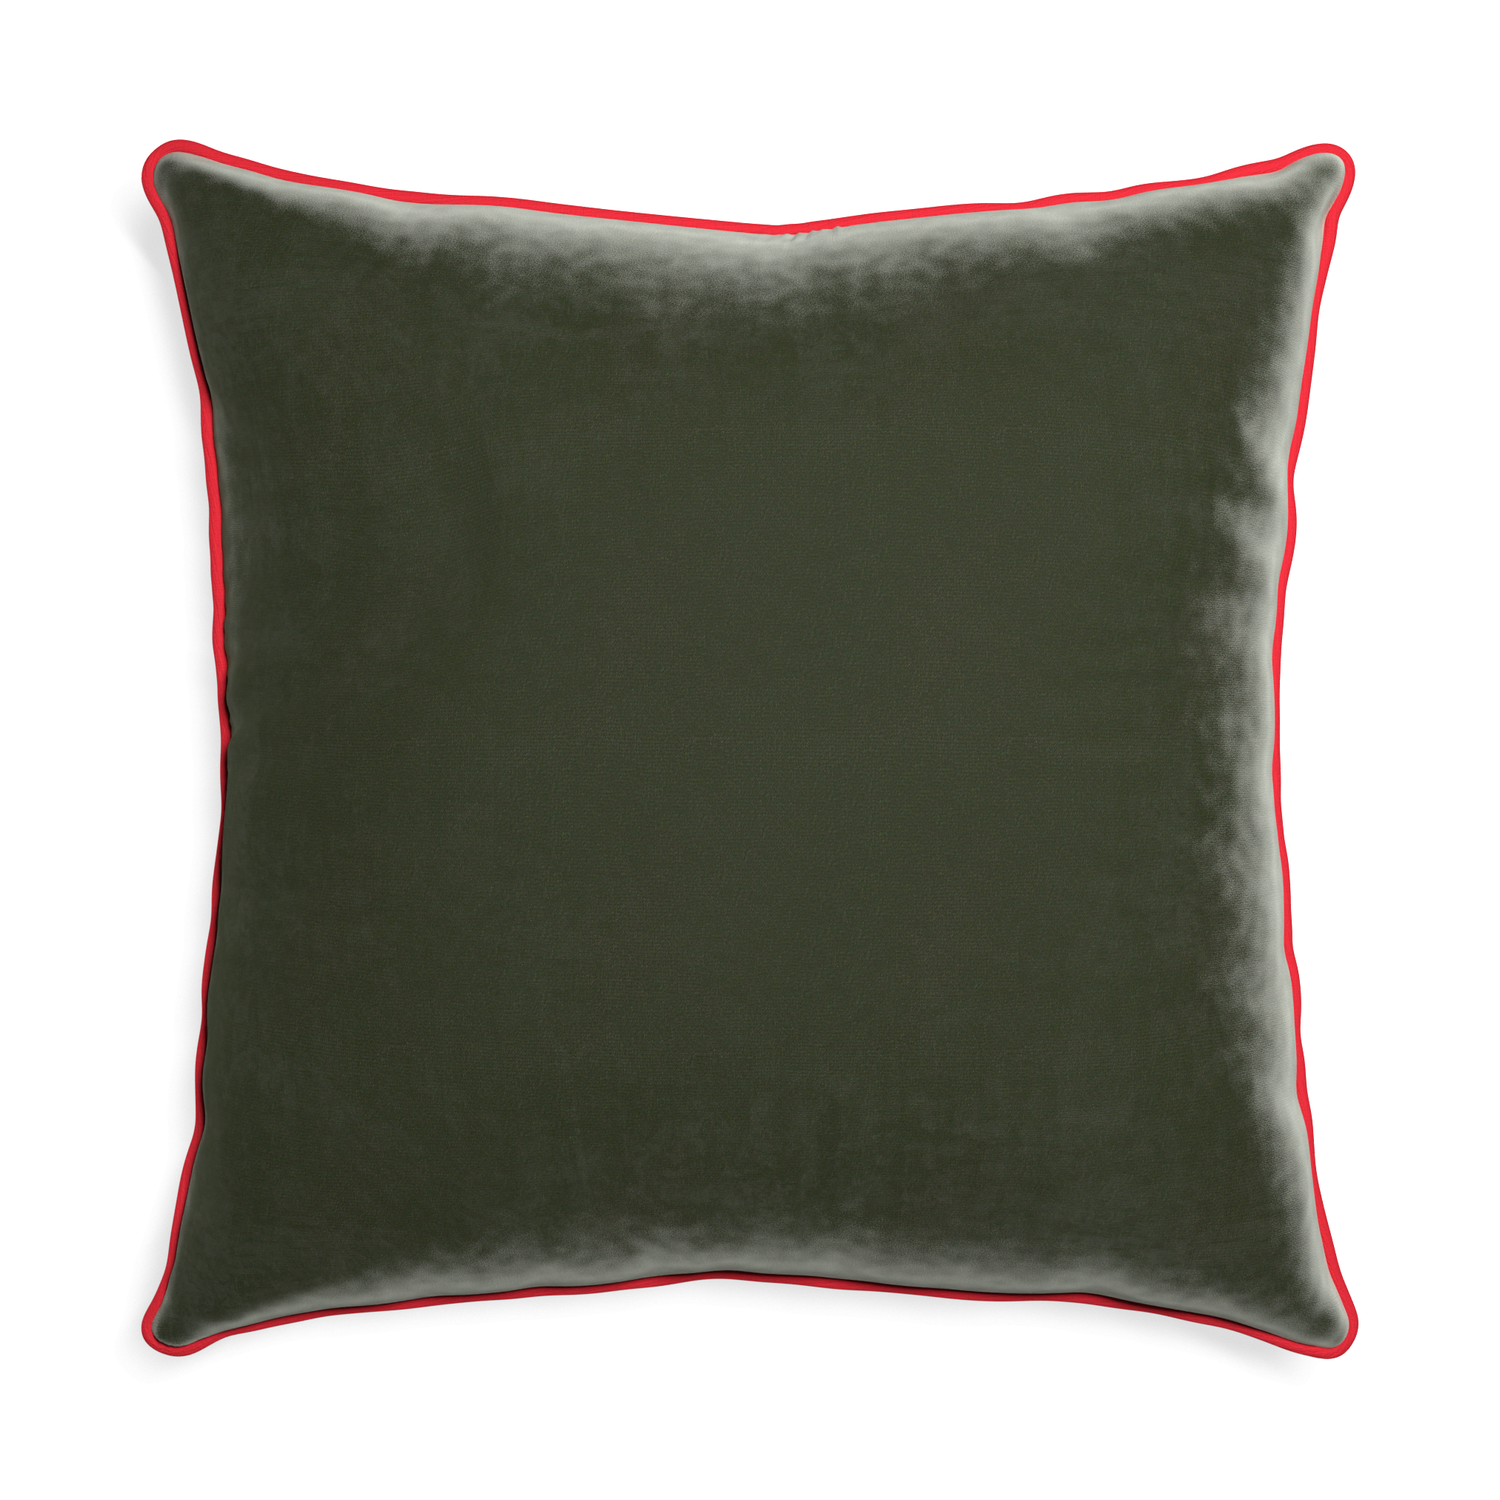 Euro-sham fern velvet custom pillow with cherry piping on white background